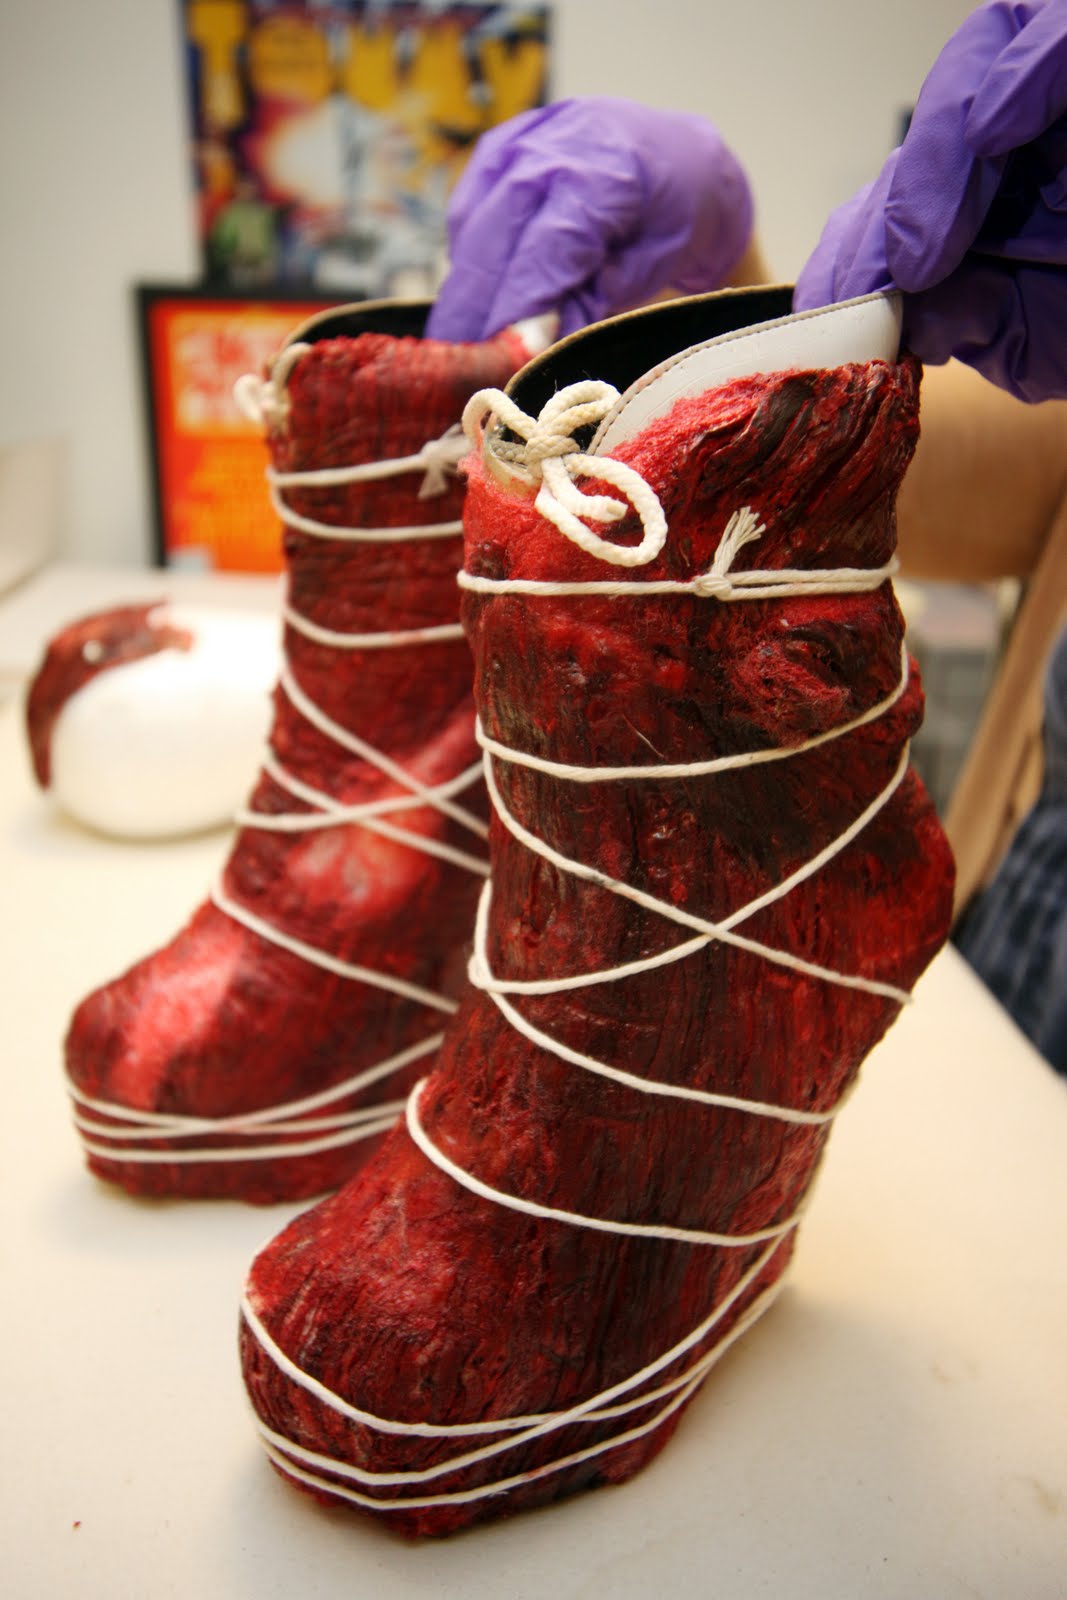 http://1.bp.blogspot.com/-T-Am-1rUweI/Tftduxn2HZI/AAAAAAAAAj8/nGyTJPp7U5Q/s1600/Meat+shoes.jpg